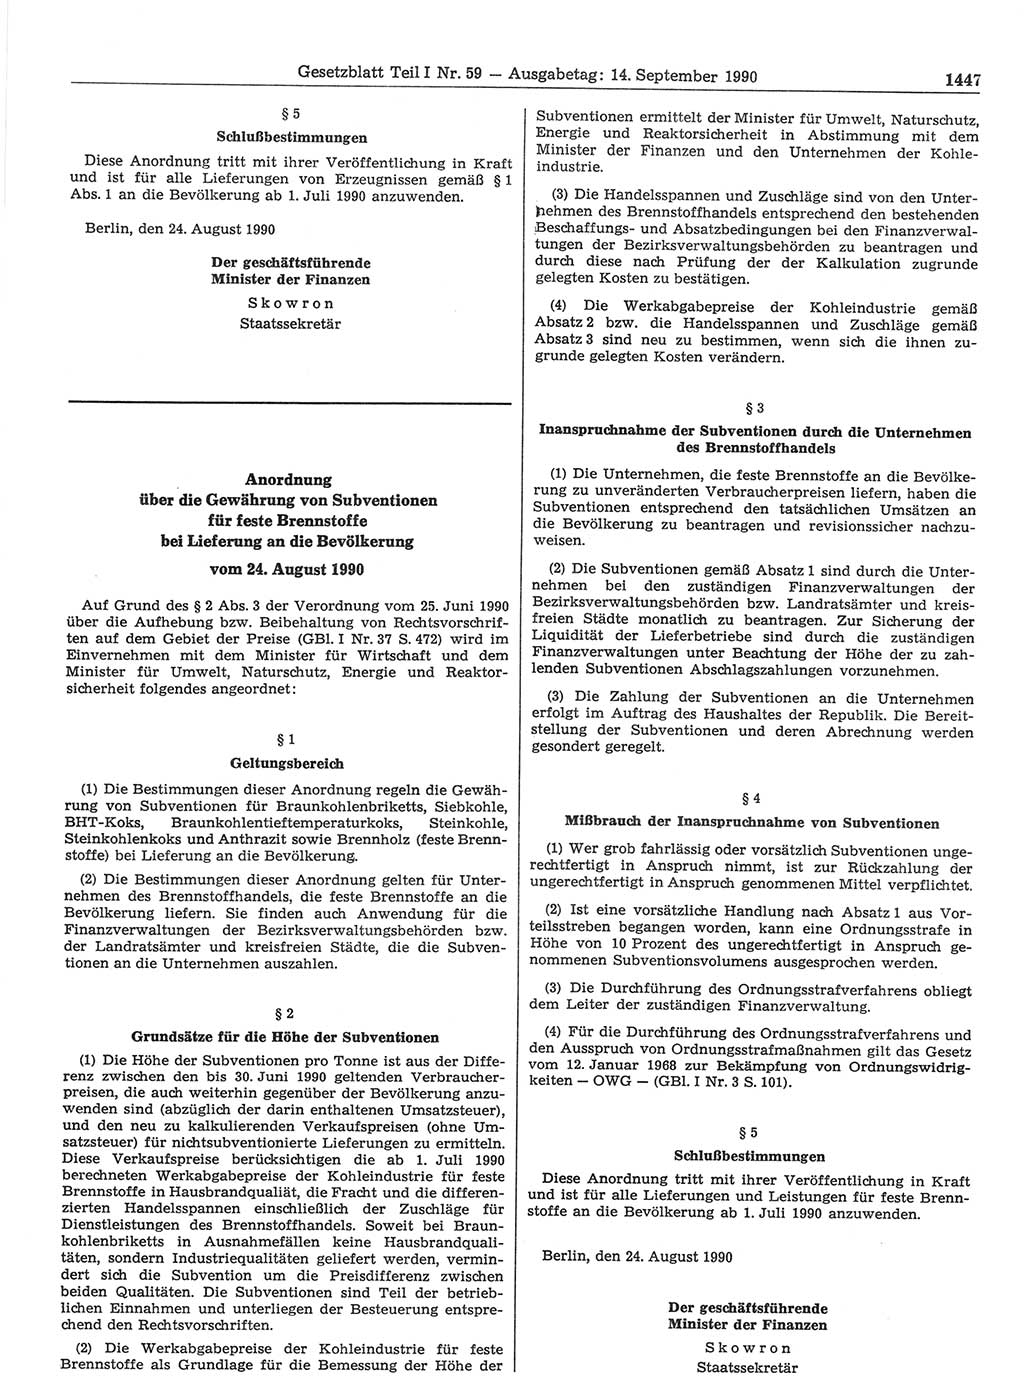 Gesetzblatt (GBl.) der Deutschen Demokratischen Republik (DDR) Teil Ⅰ 1990, Seite 1447 (GBl. DDR Ⅰ 1990, S. 1447)